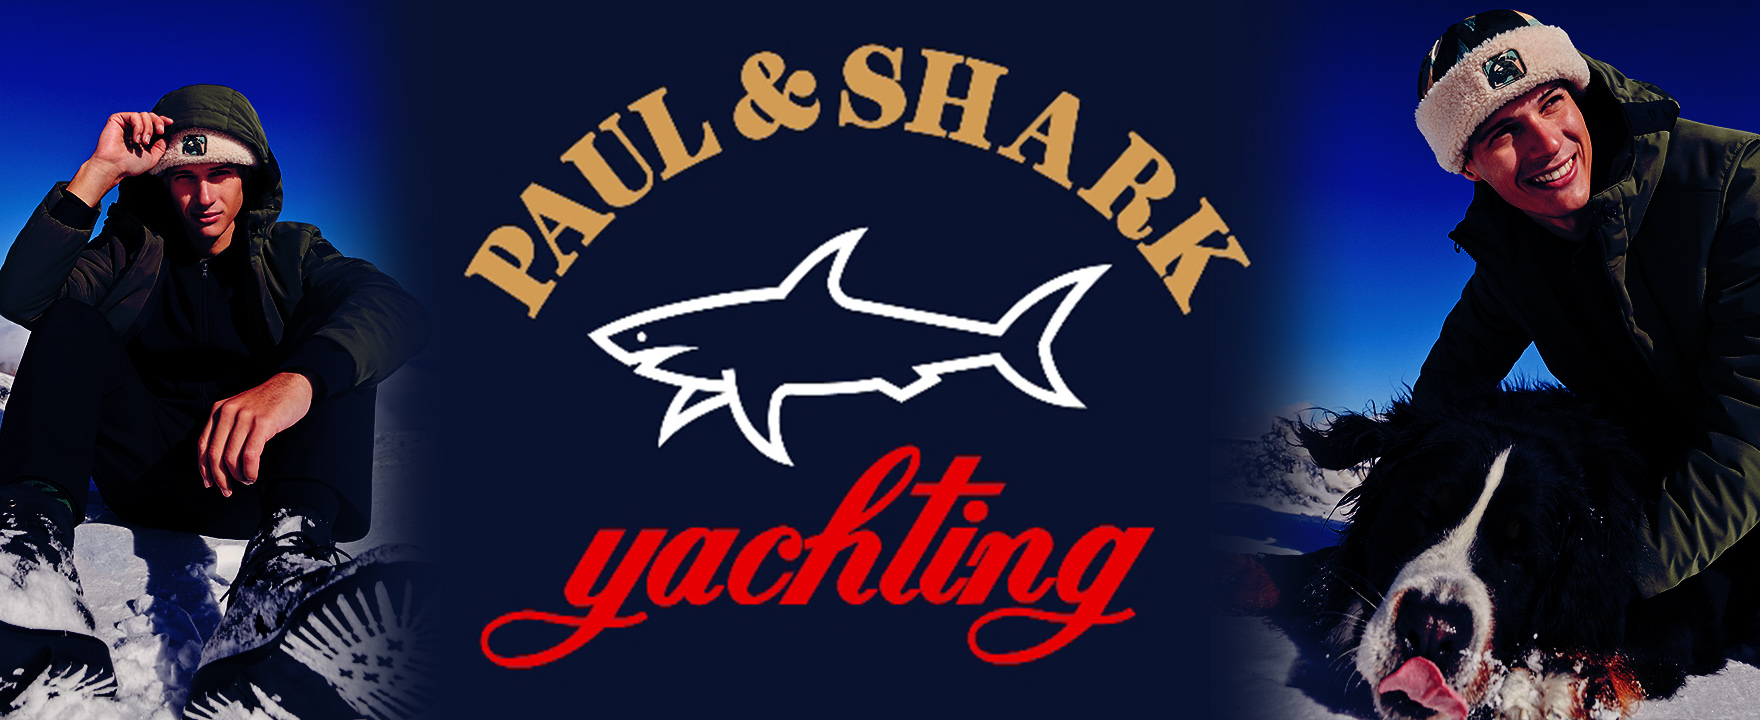 PAUL&SHARK